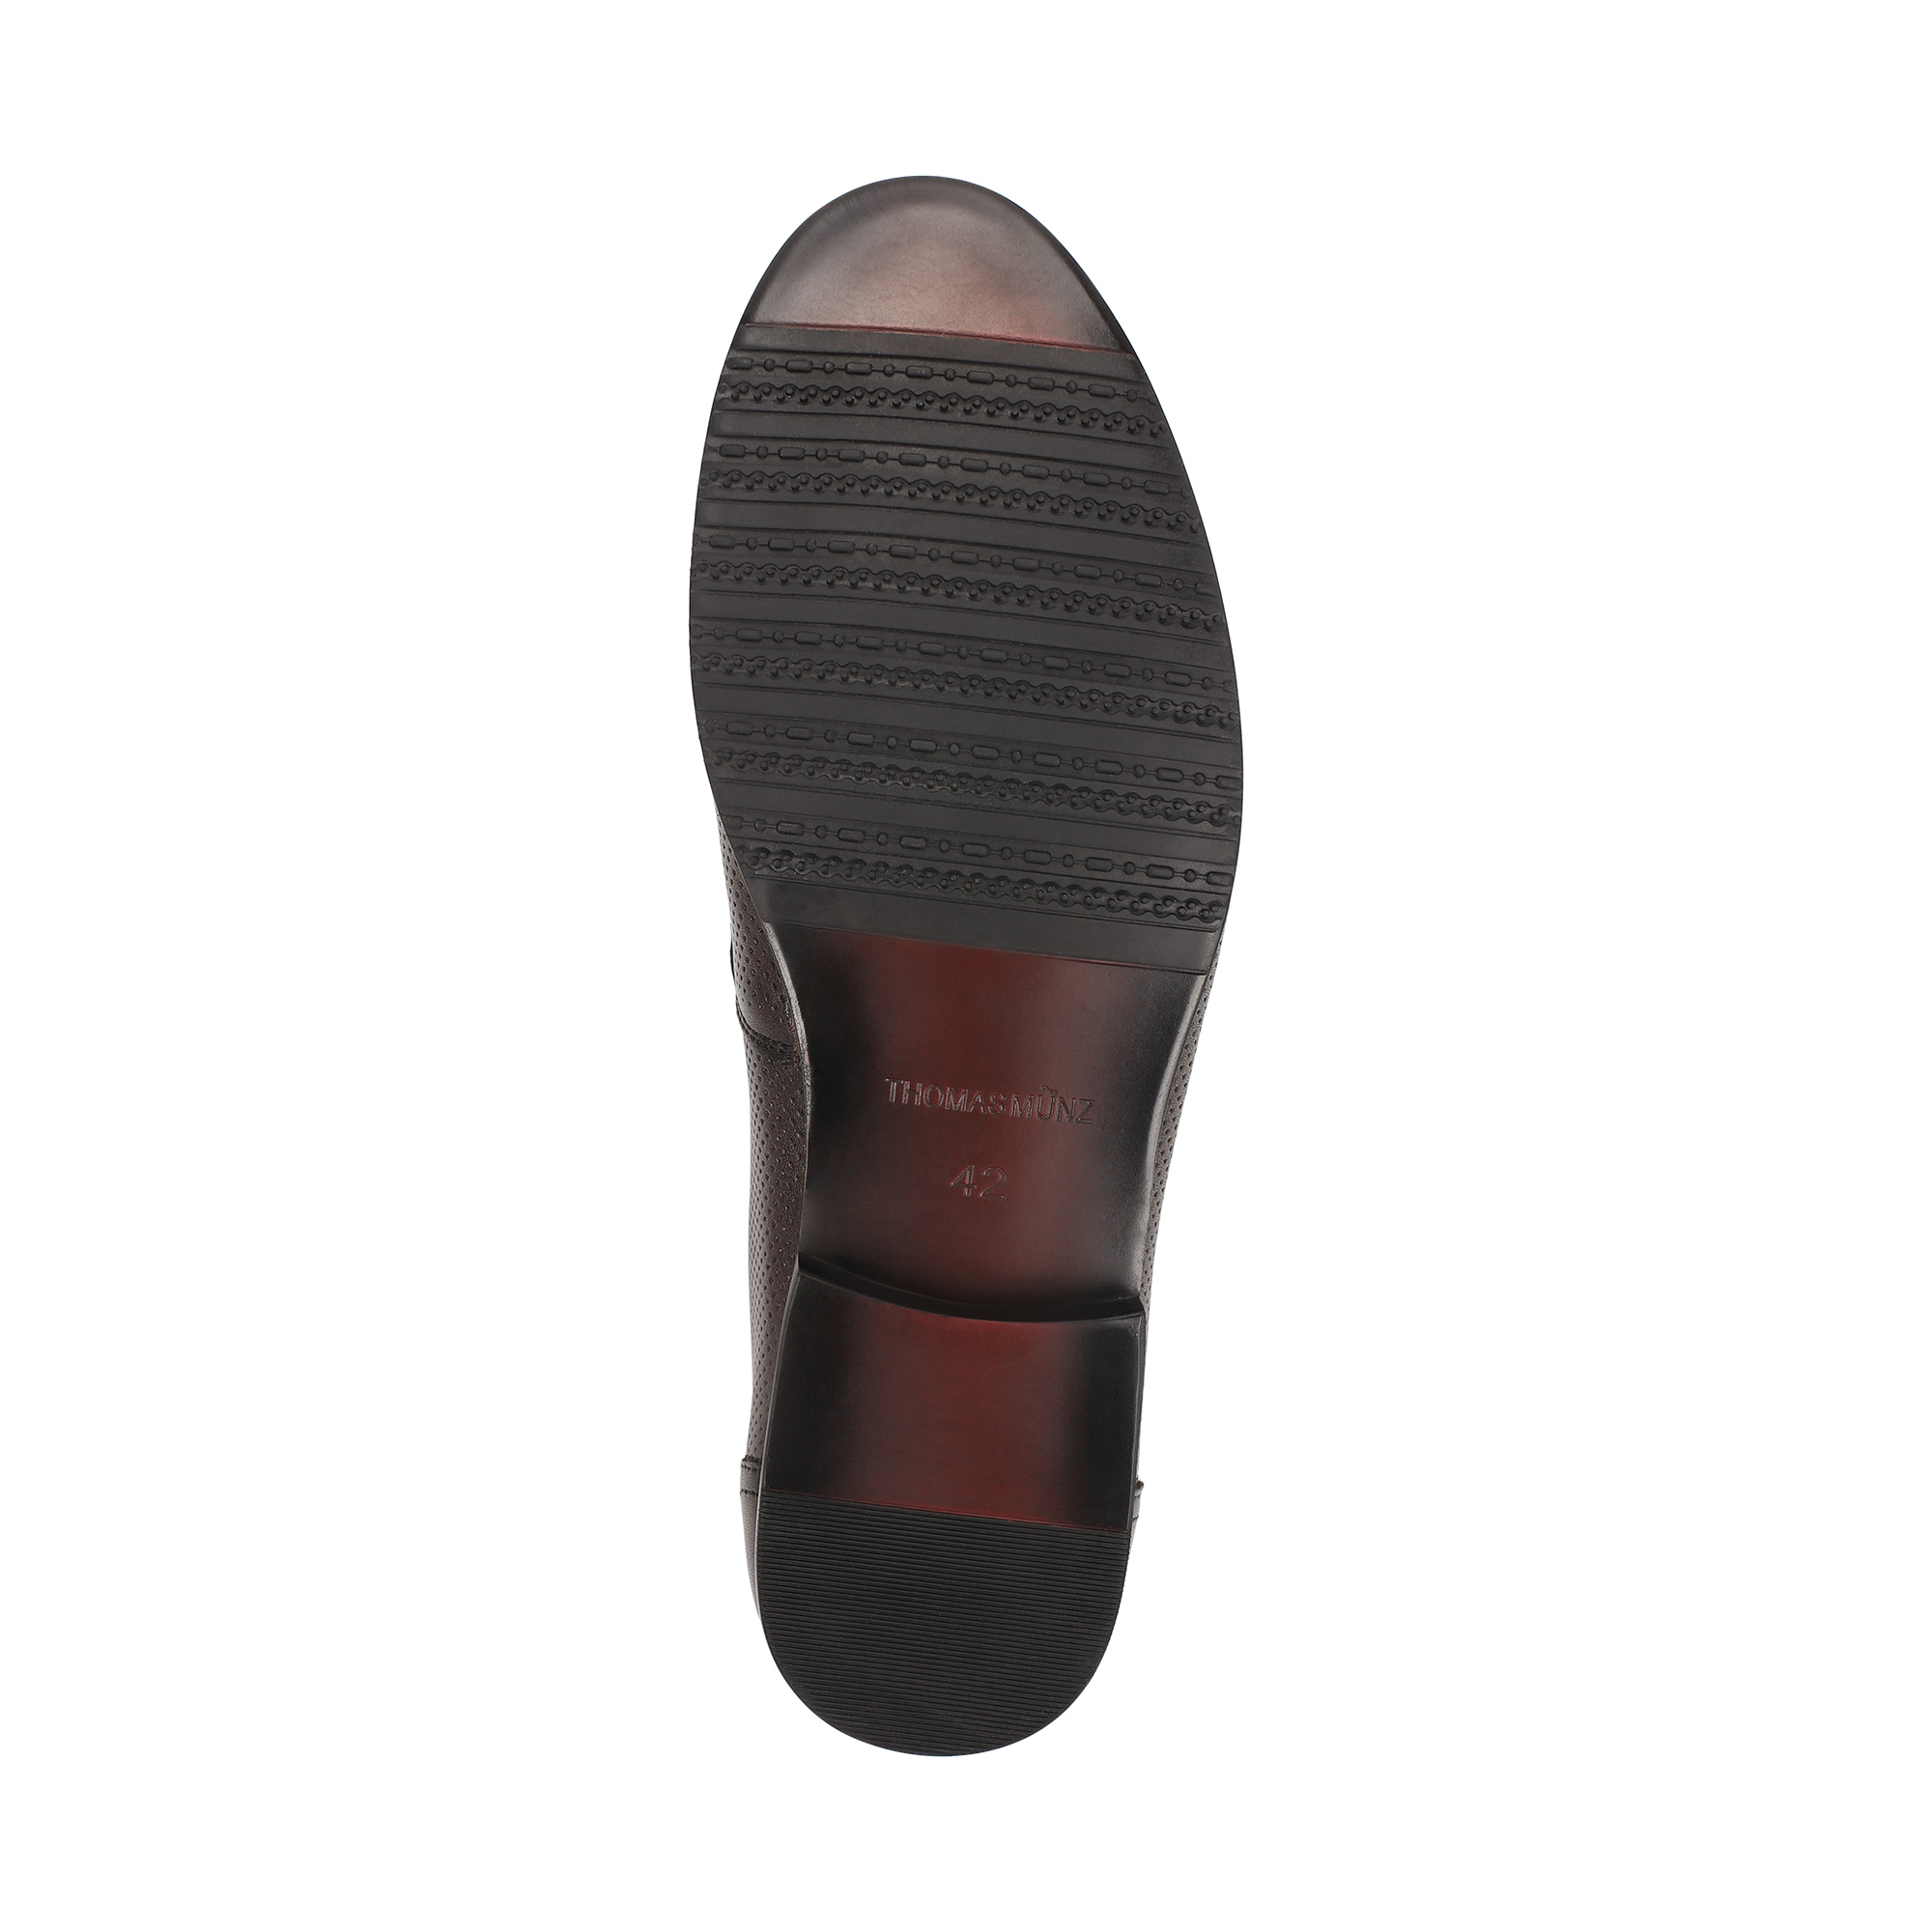 Туфли/полуботинки Thomas Munz 058-115A-1609, цвет темно-коричневый, размер 41 - фото 4